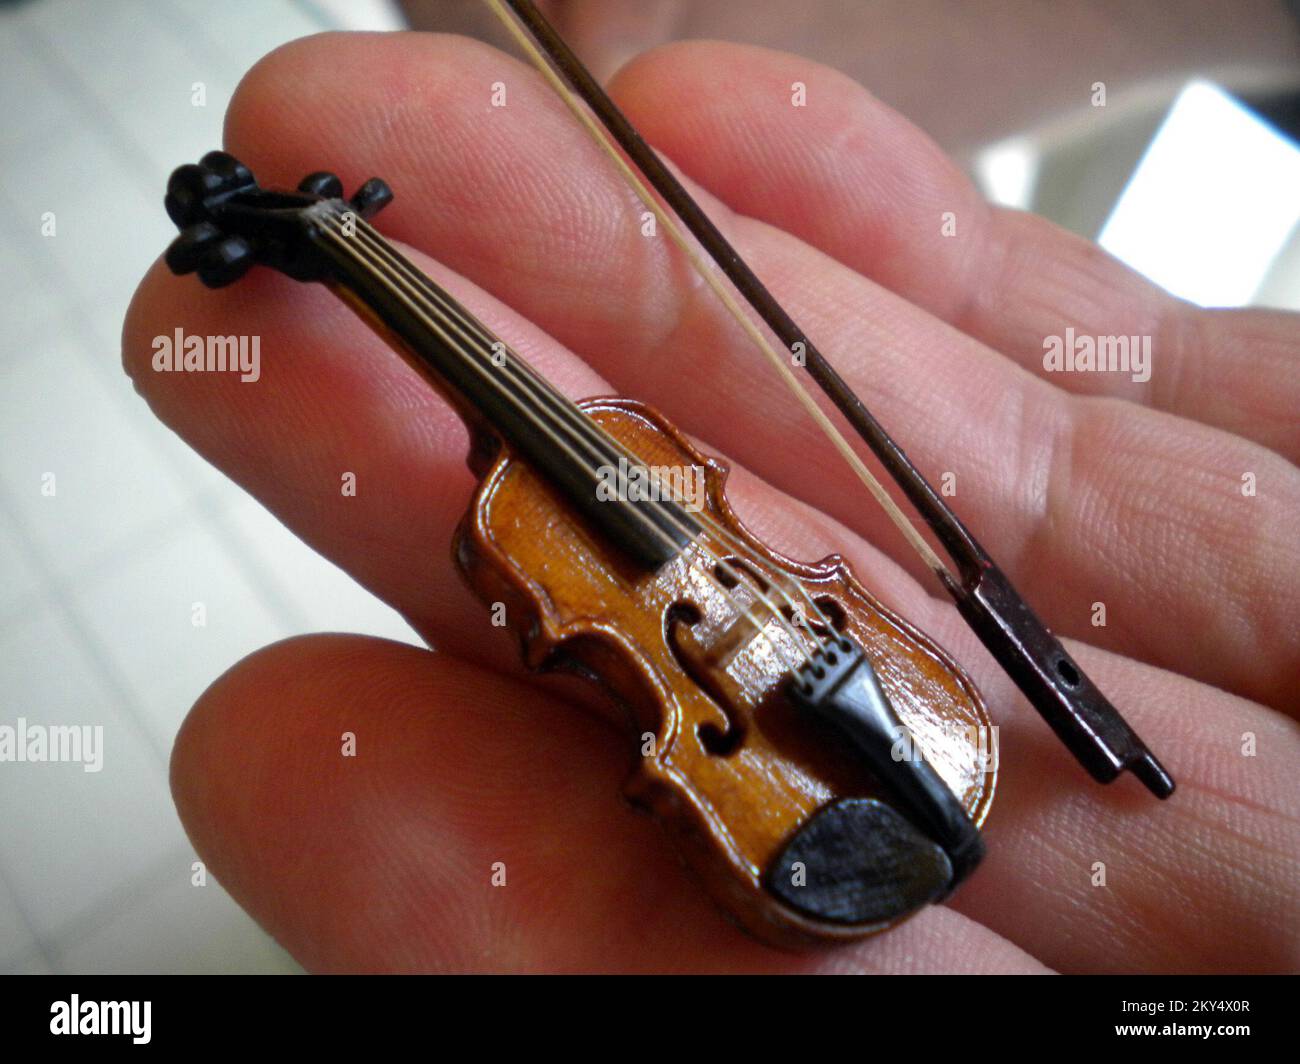 Erfinder Vladimir Kulic aus Borovo hat die kleinste Geige der Welt gebaut.  Zur Herstellung der Geige benutzte er Cikakatimber aus Bali und eine Schnur  aus indischem Pferdehaar aus Bolivien. Die Länge beträgt